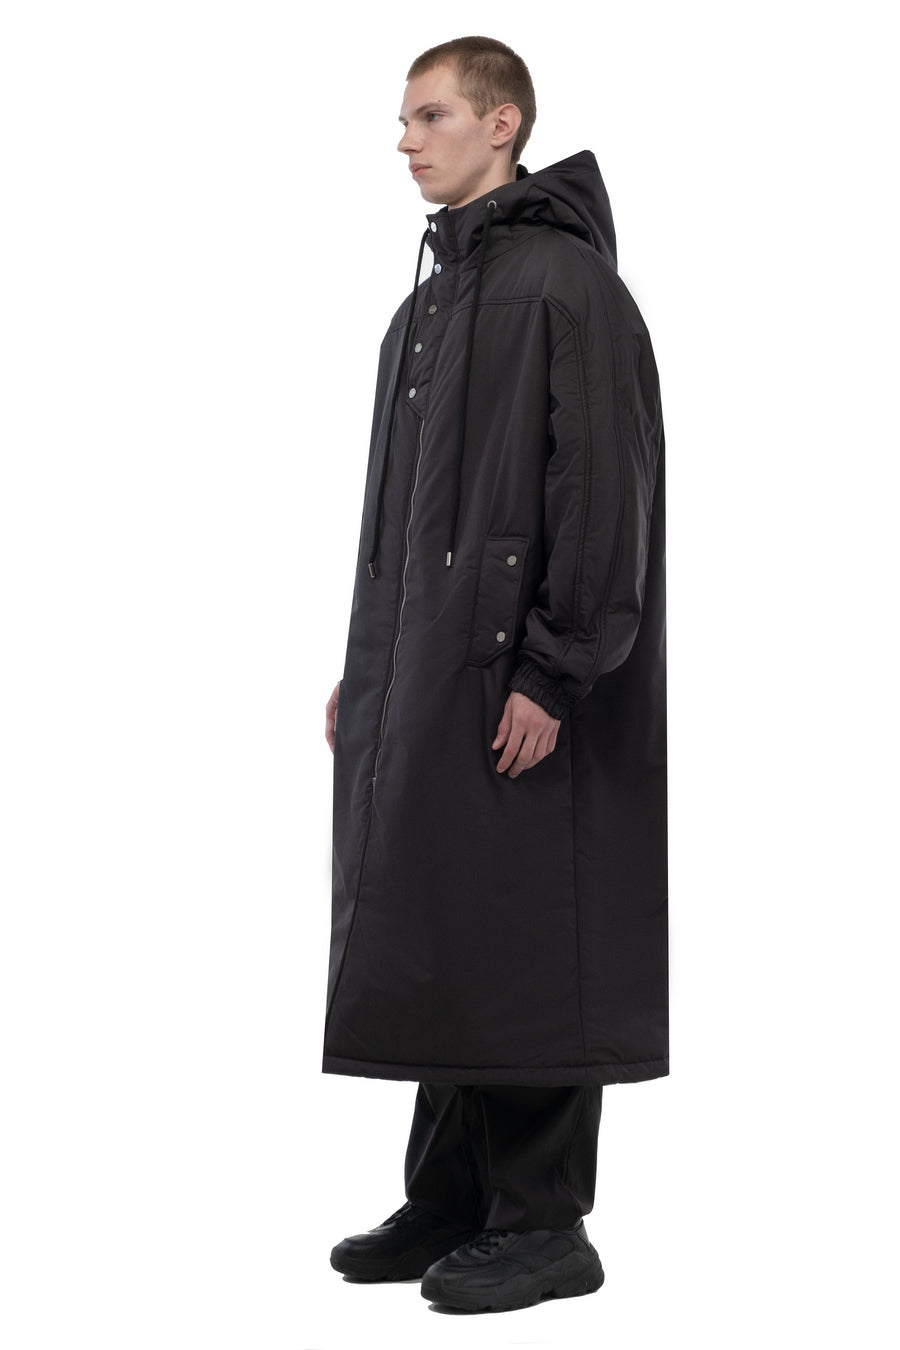 Black Oversized Hooded Long Coat